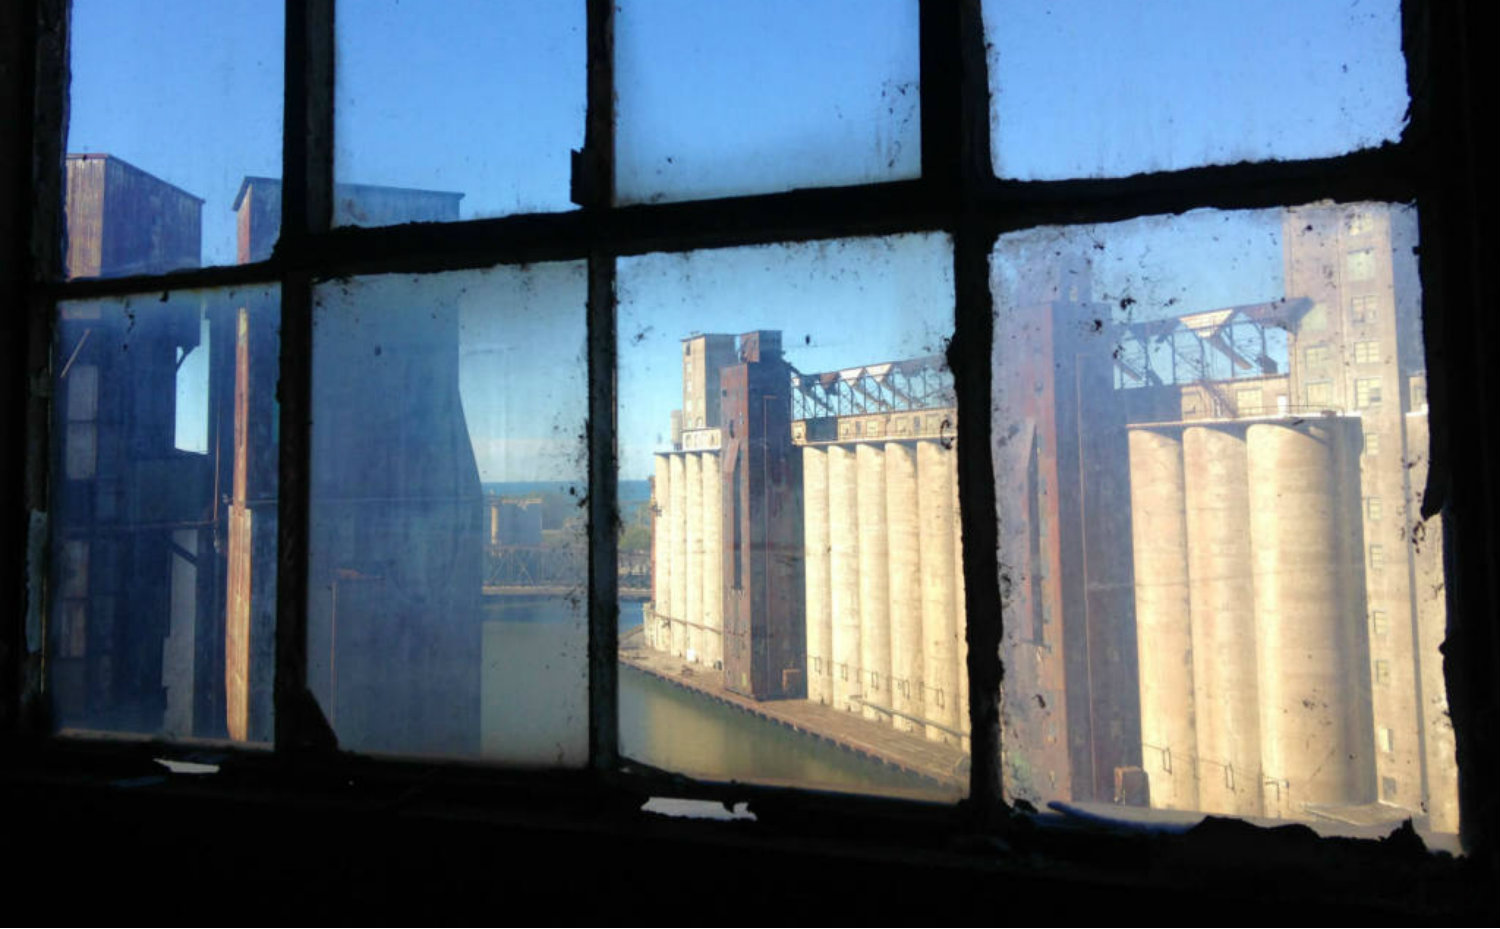 Explore Buffalo's Grain Silo Tour in Buffalo, NY - Featured Image